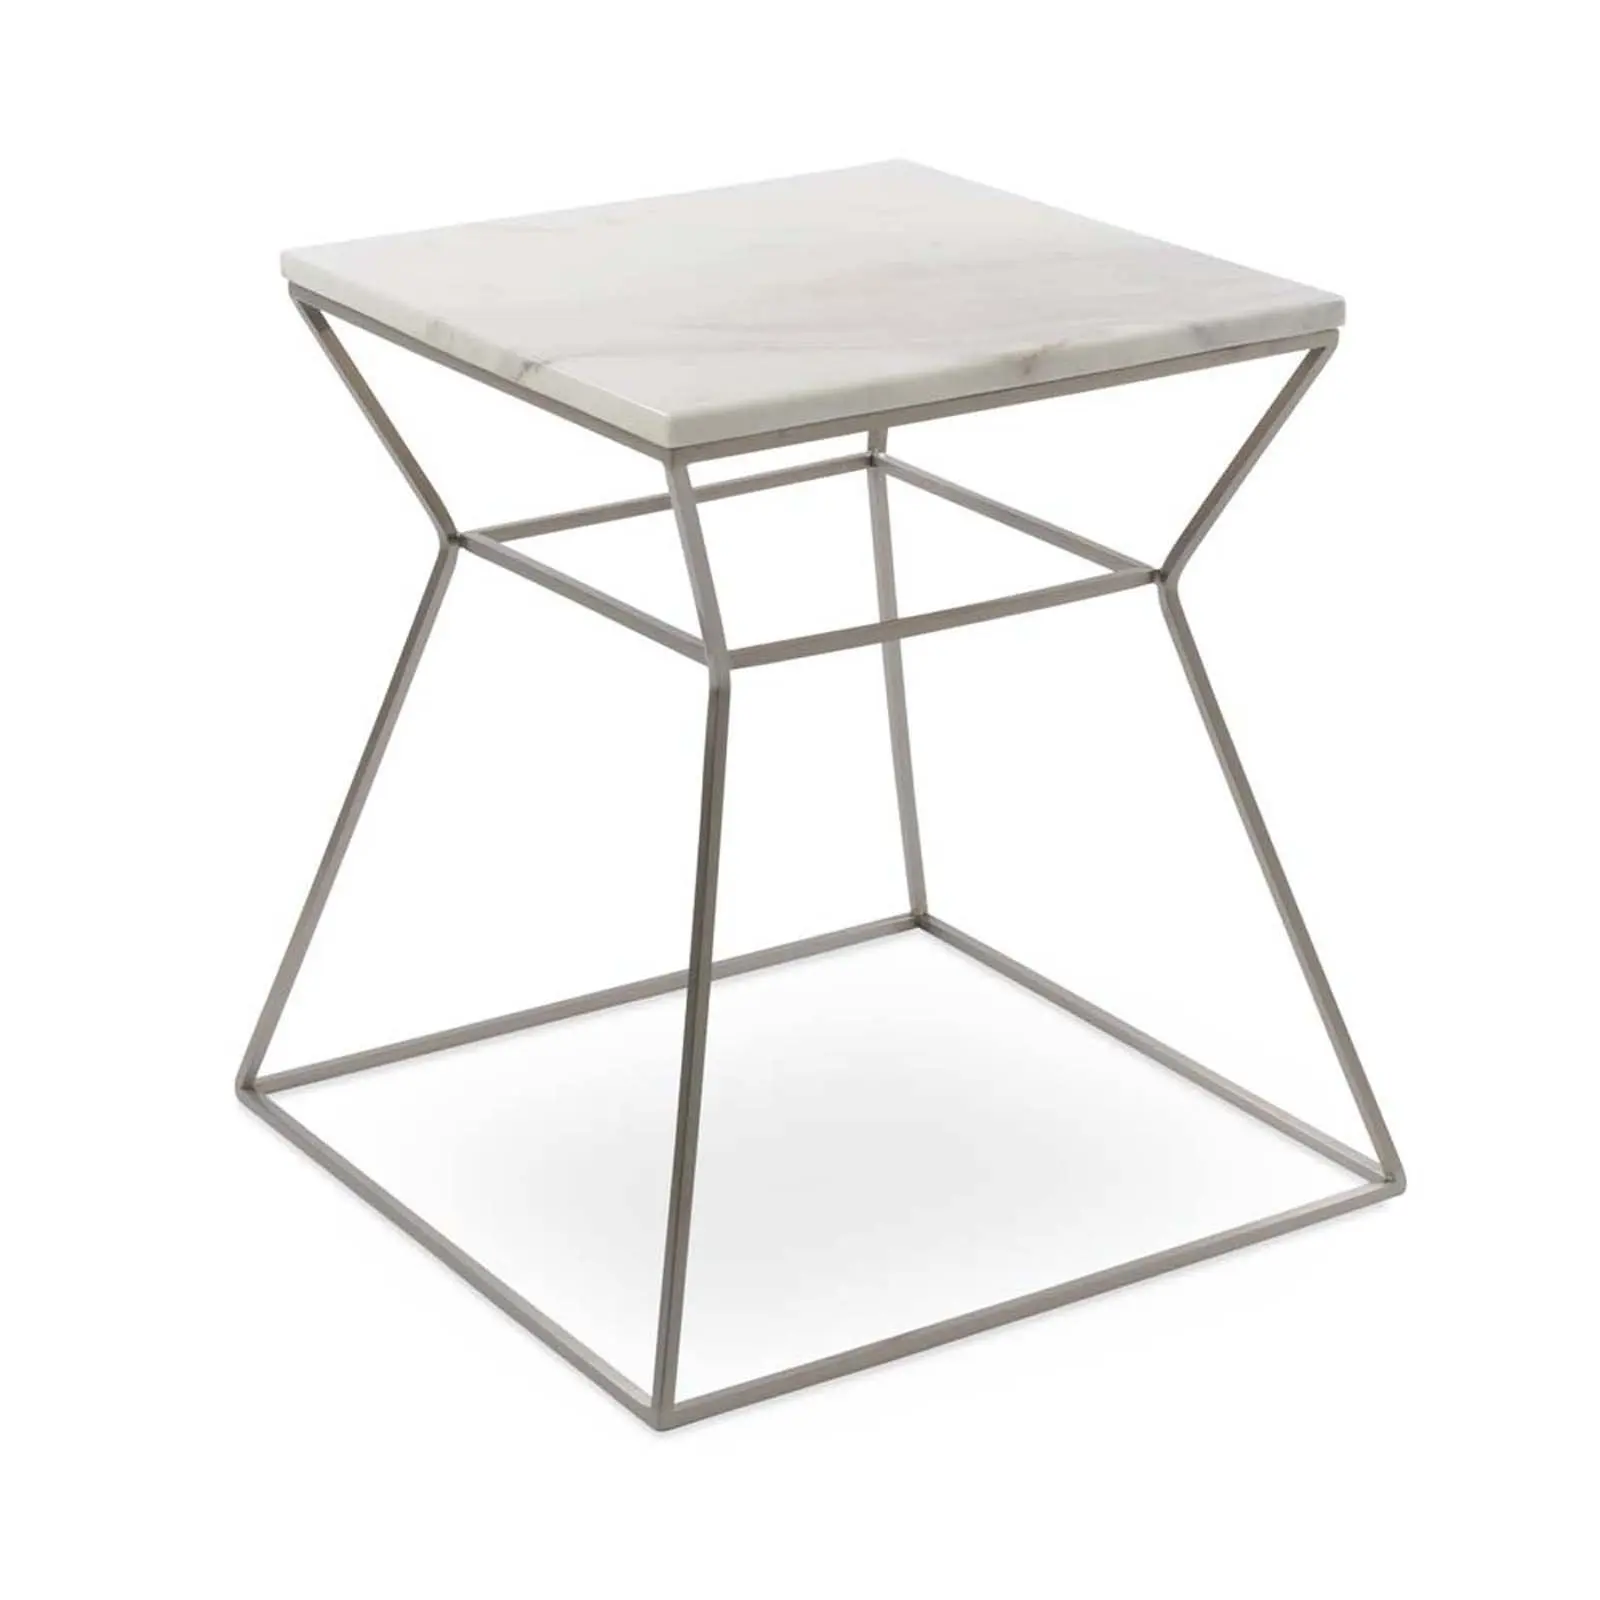 순수한 흰색 사각형 모양의 대리석 탑 센터 테이블 탑 빛나는 금속베이스가있는 최고의 디자인 커피 테이블